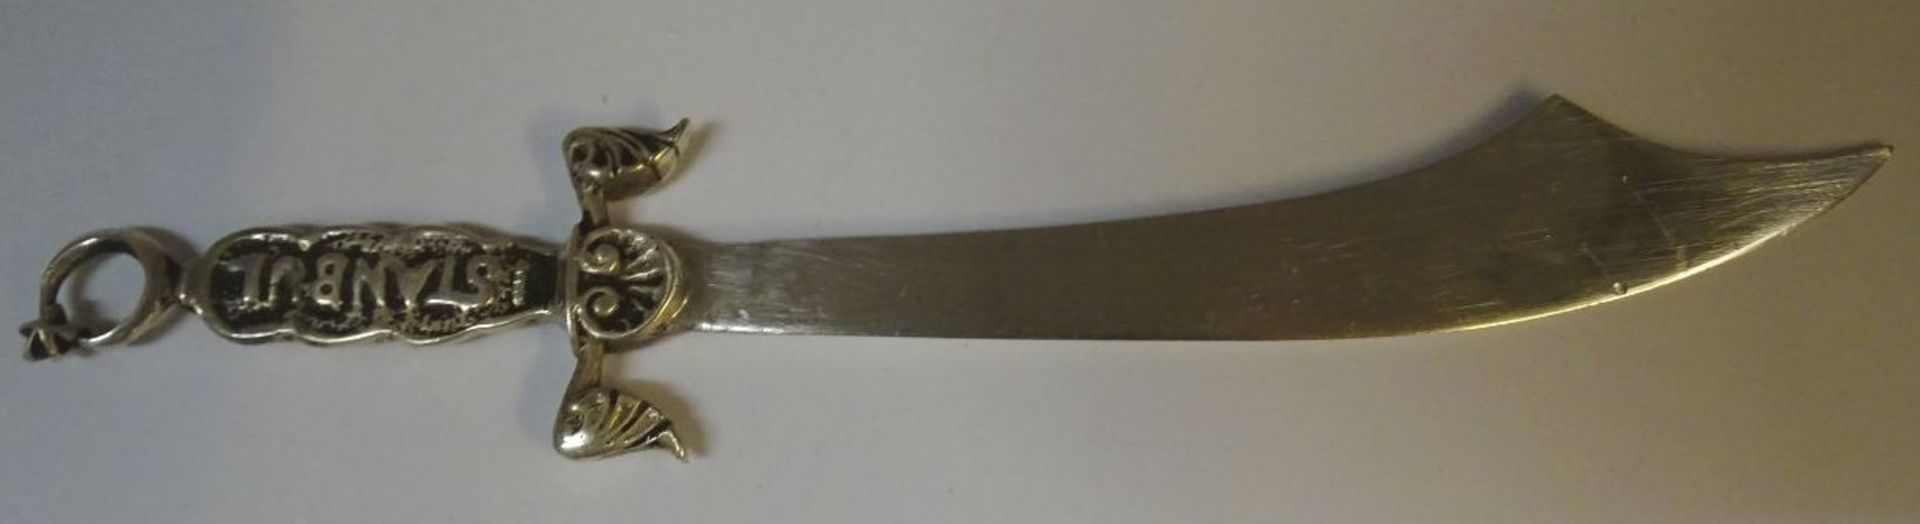 Silber-800- Brieföffner in Säbelform, L-16 cm, 23 gramm Griff "Istanbul" beschriftet - Bild 4 aus 4